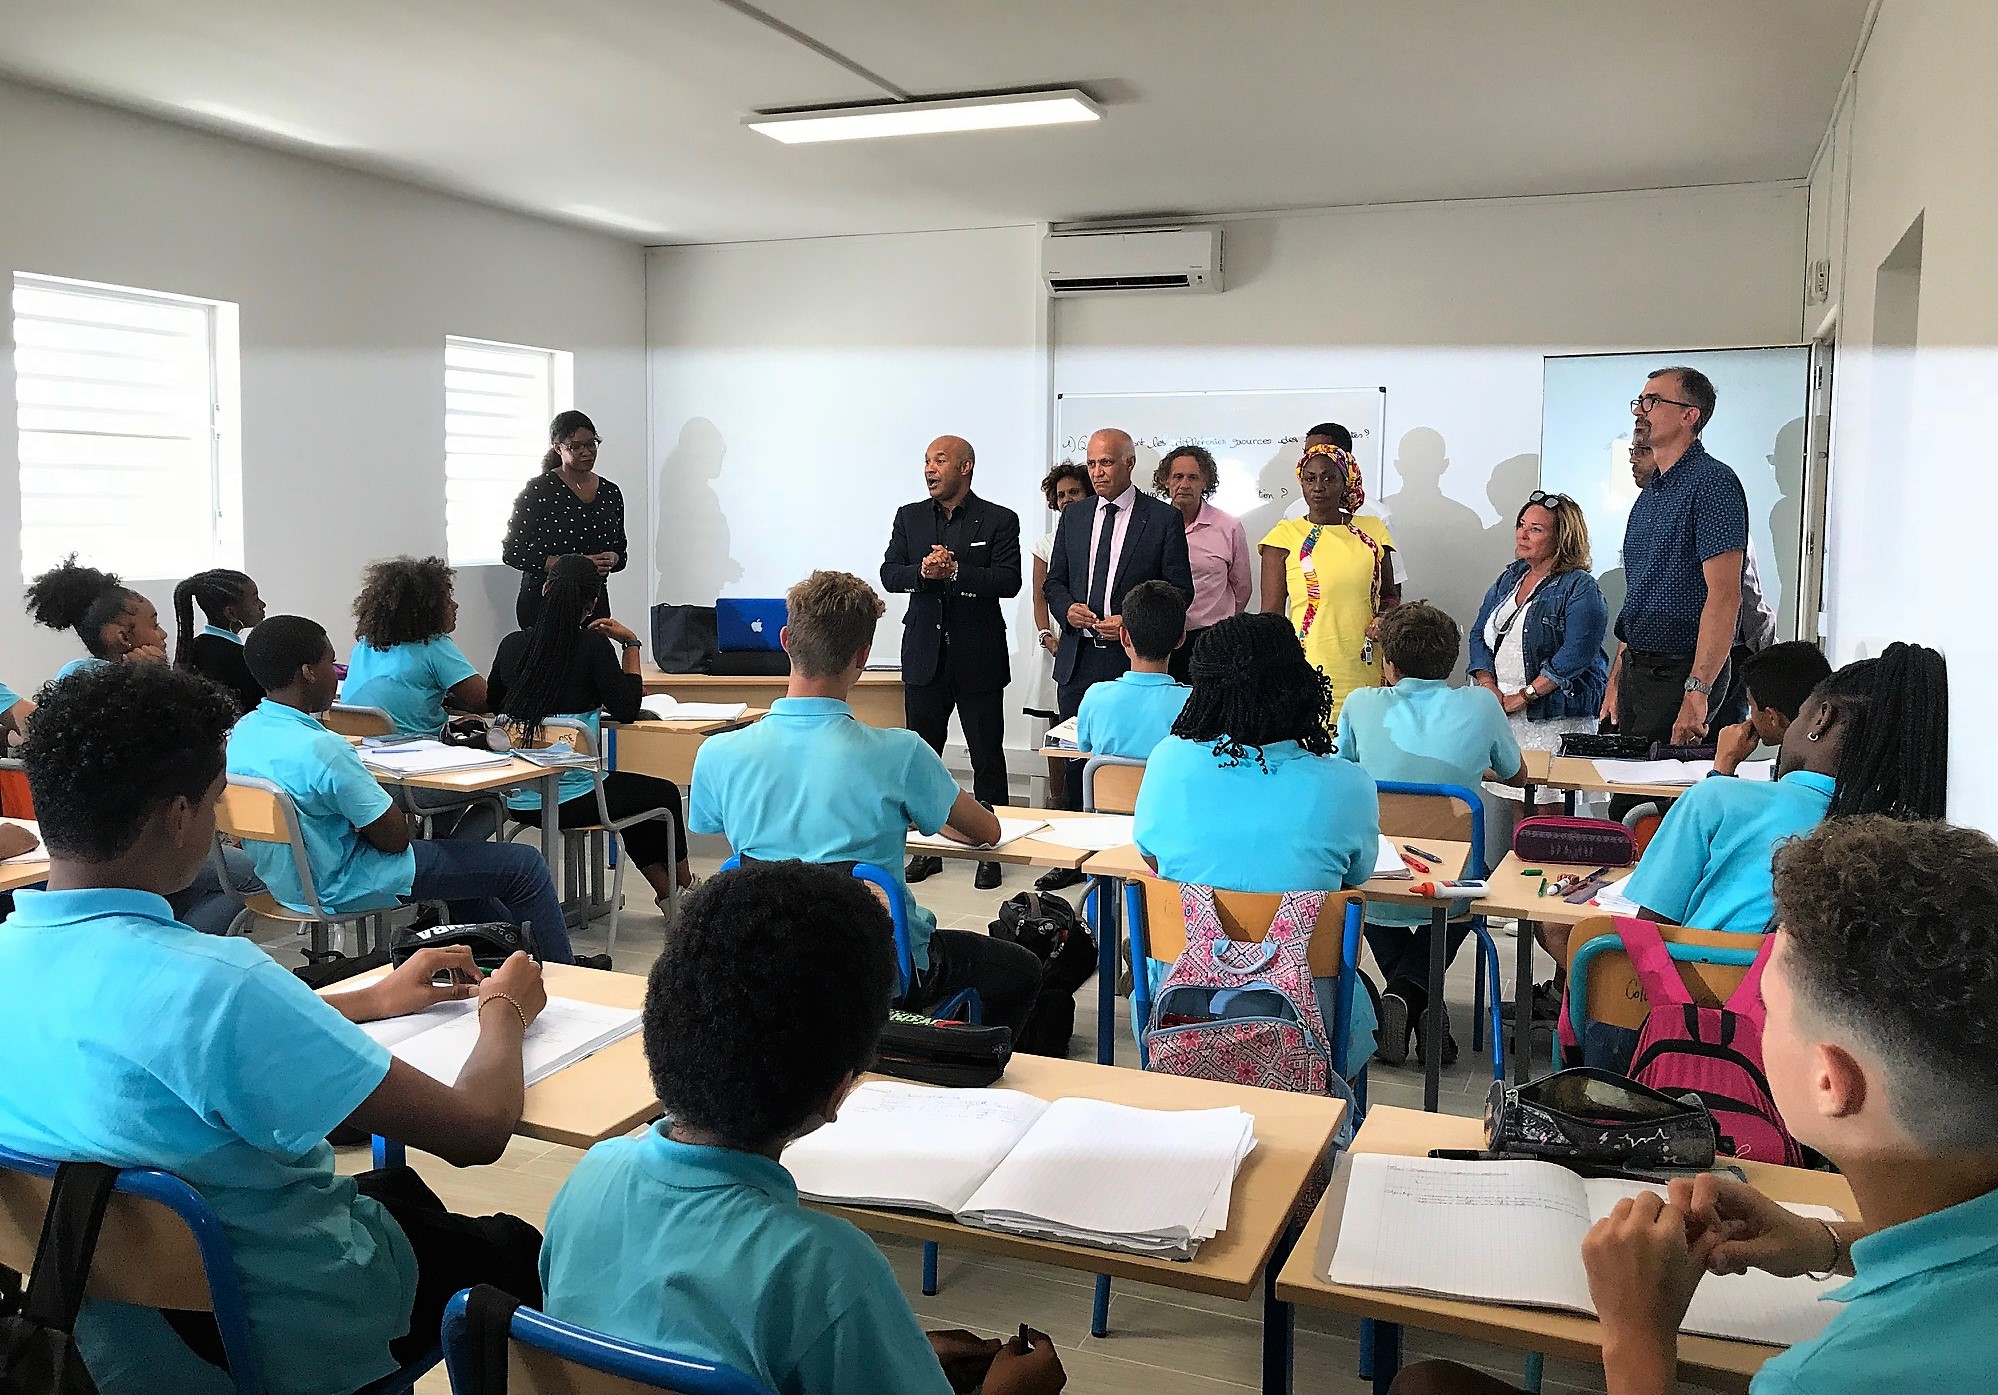 Les classes modulaires de la Cit scolaire ouvertes aux collgiens de Soualiga